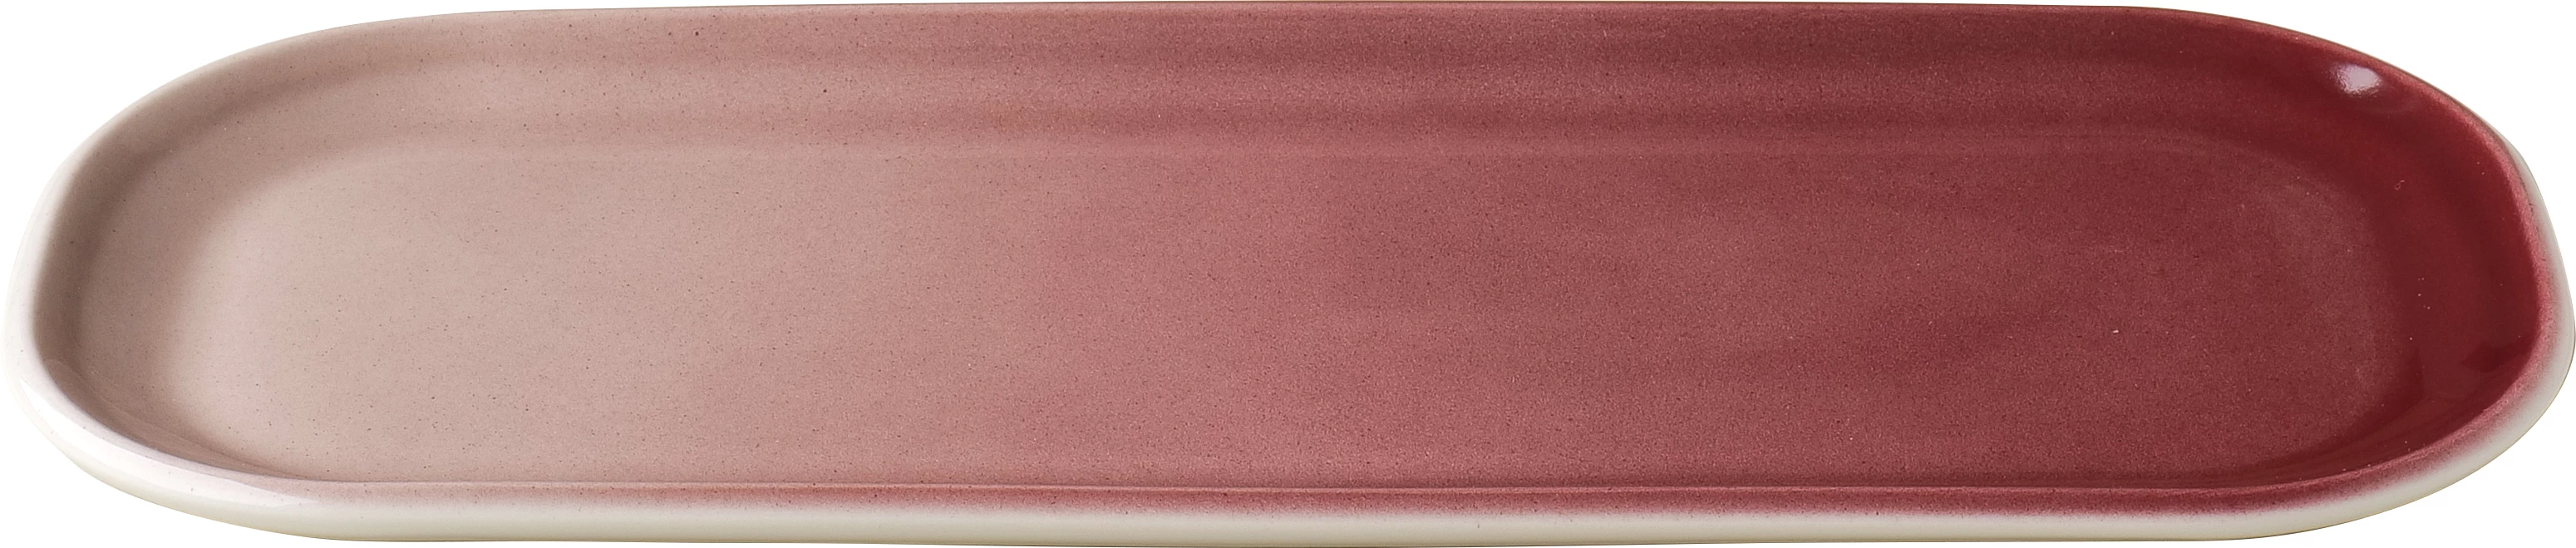 Figgjo Pax oval tallerken, rød, 30 x 13 cm